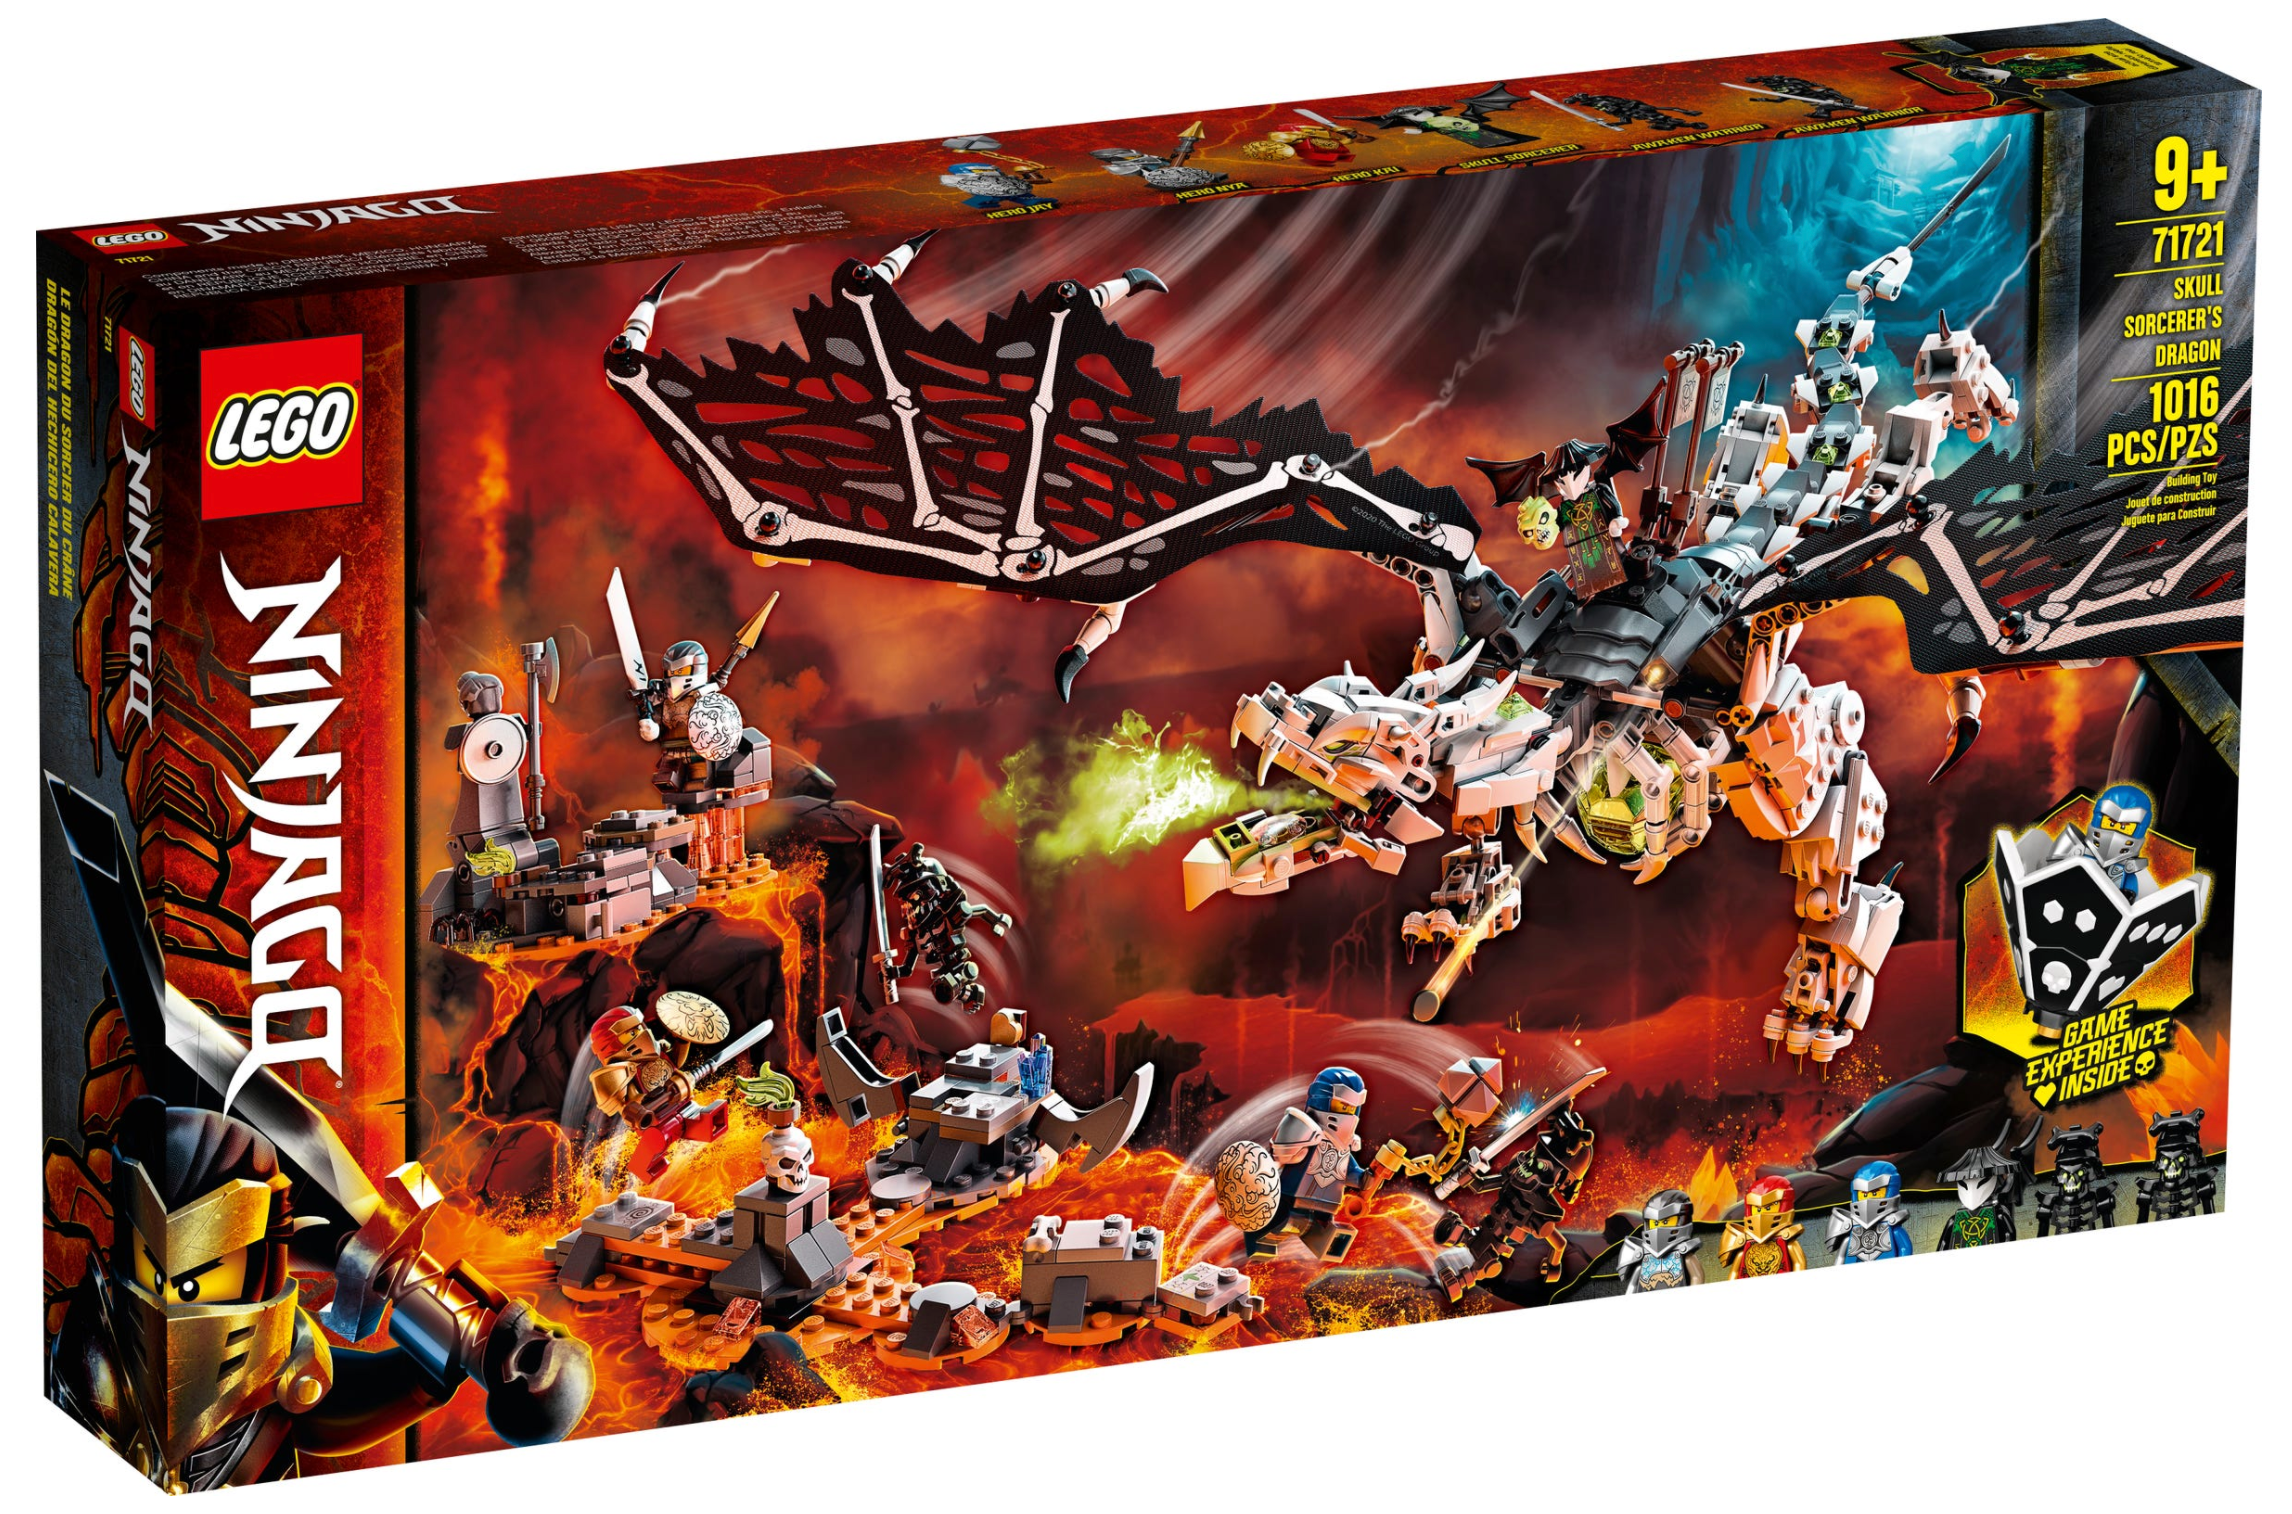 LEGO: Ninjago - Skull Sorcerer's Dragon